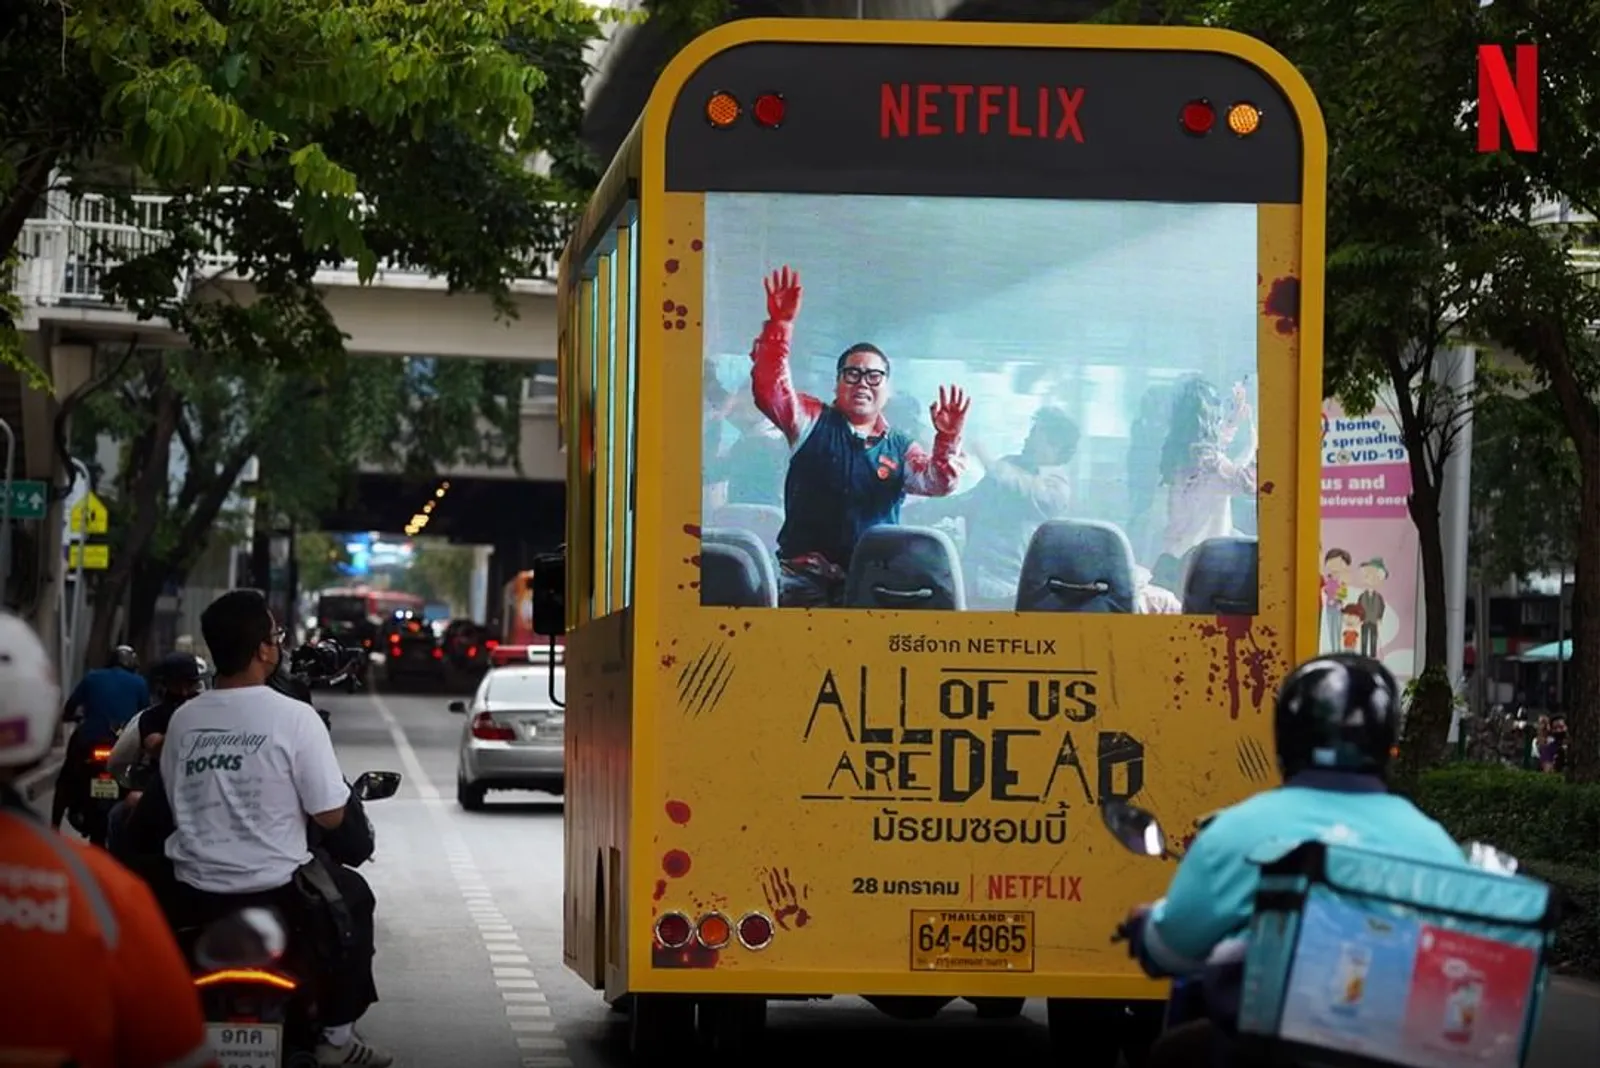 Cara Unik Netflix dalam Menarik Massa Penonton 'All of Us Are Dead'